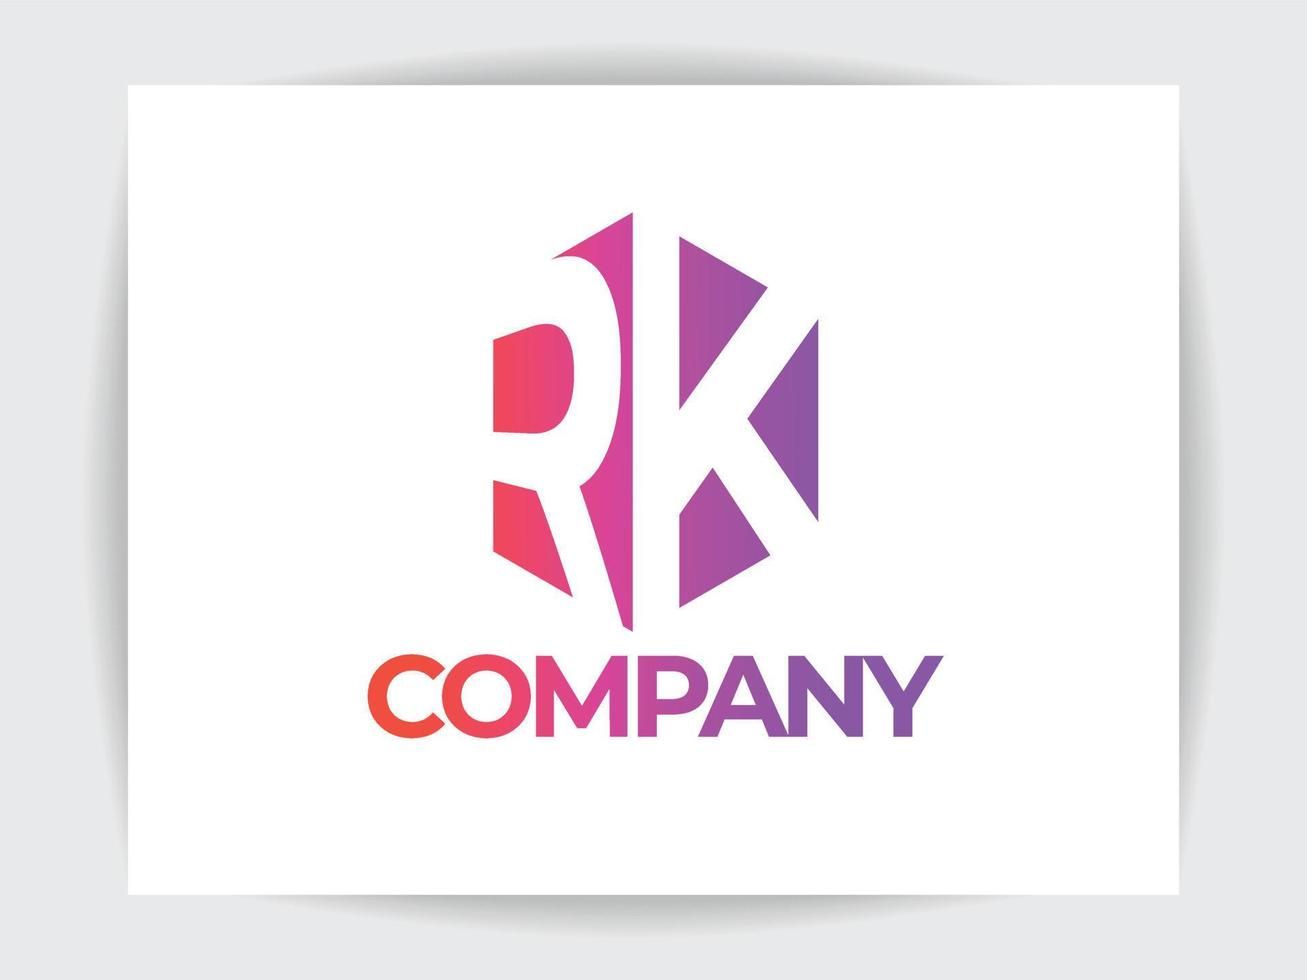 professionelle r- und k-buchstaben-logo-design-vorlage, mit weißem hintergrund, kreatives, hochwertiges logo-design. vektor